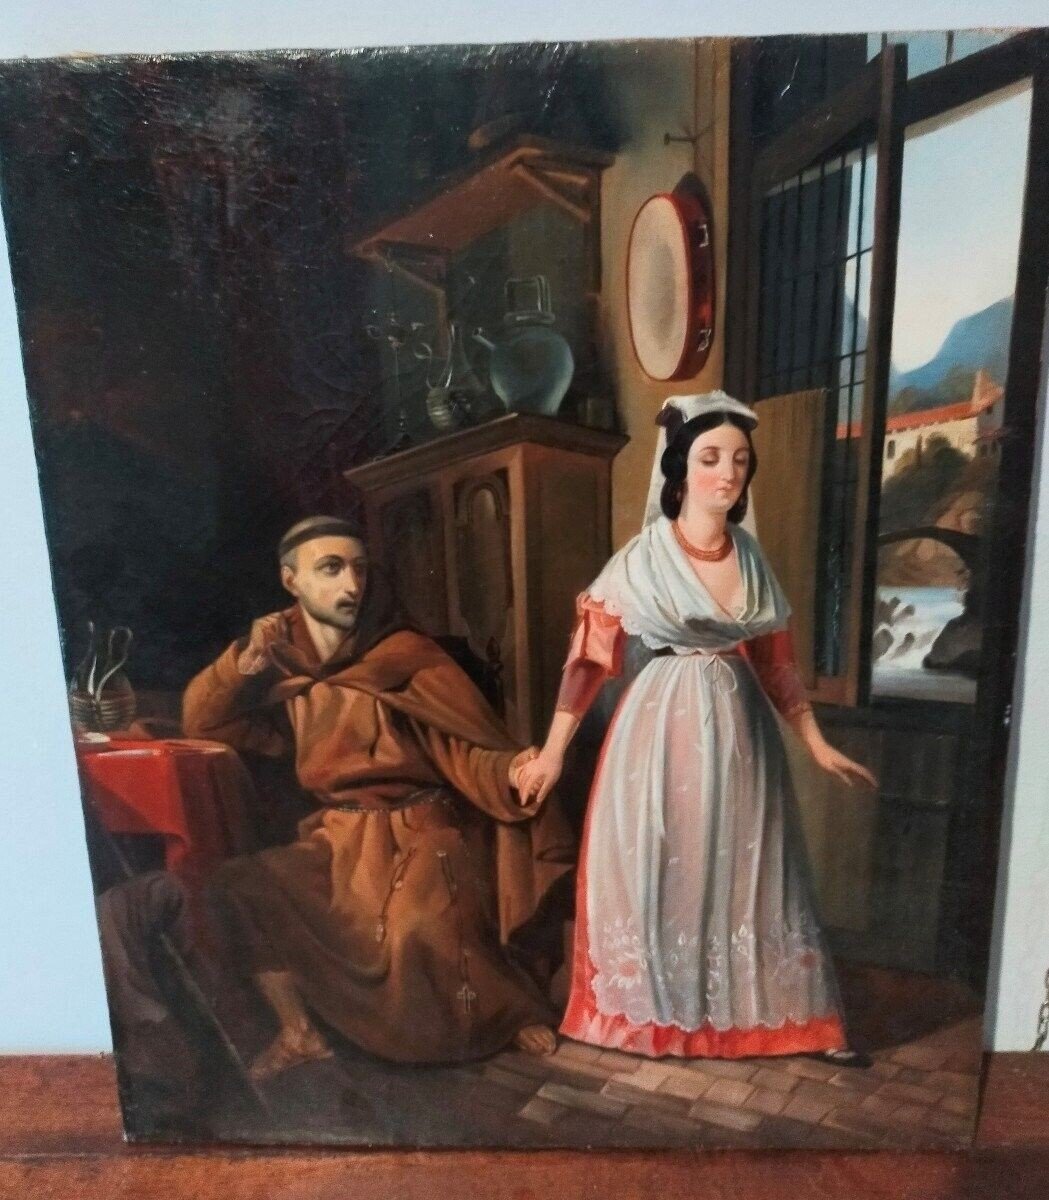 Antico dipinto  800 XIX secolo scuola italiana scena galante  romanticismo